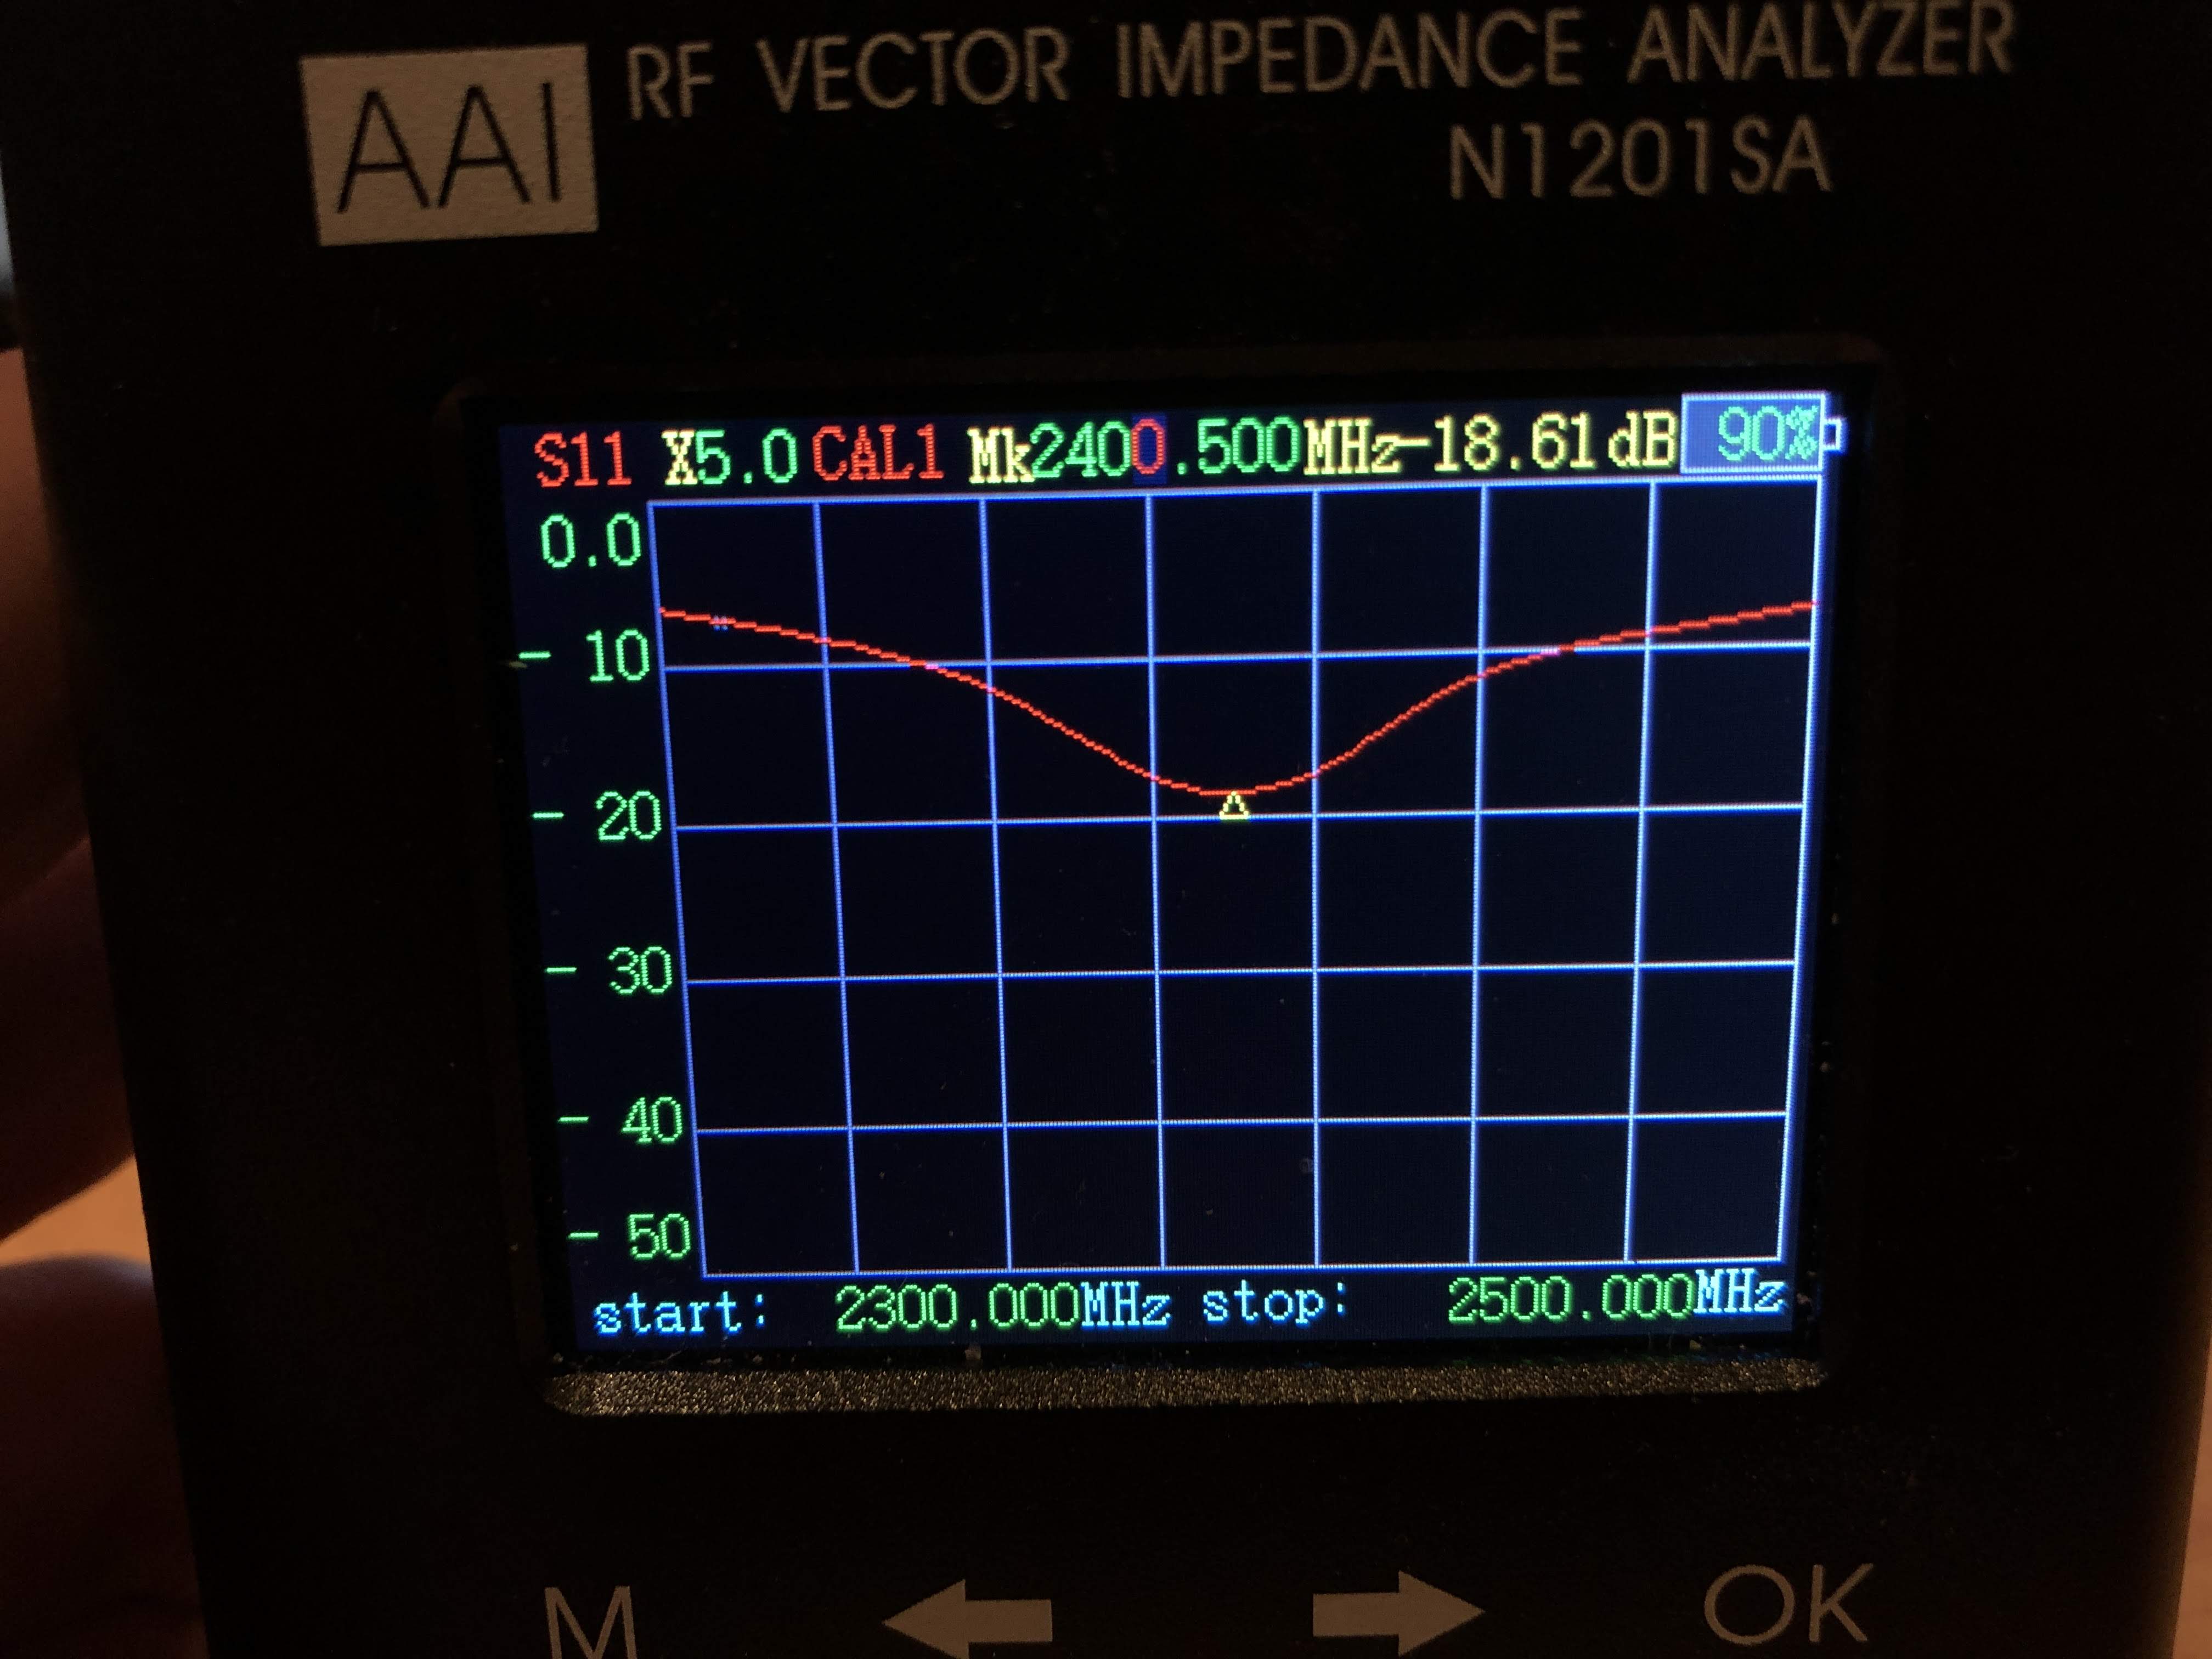 VNA, showing dip at 2400.500MHz